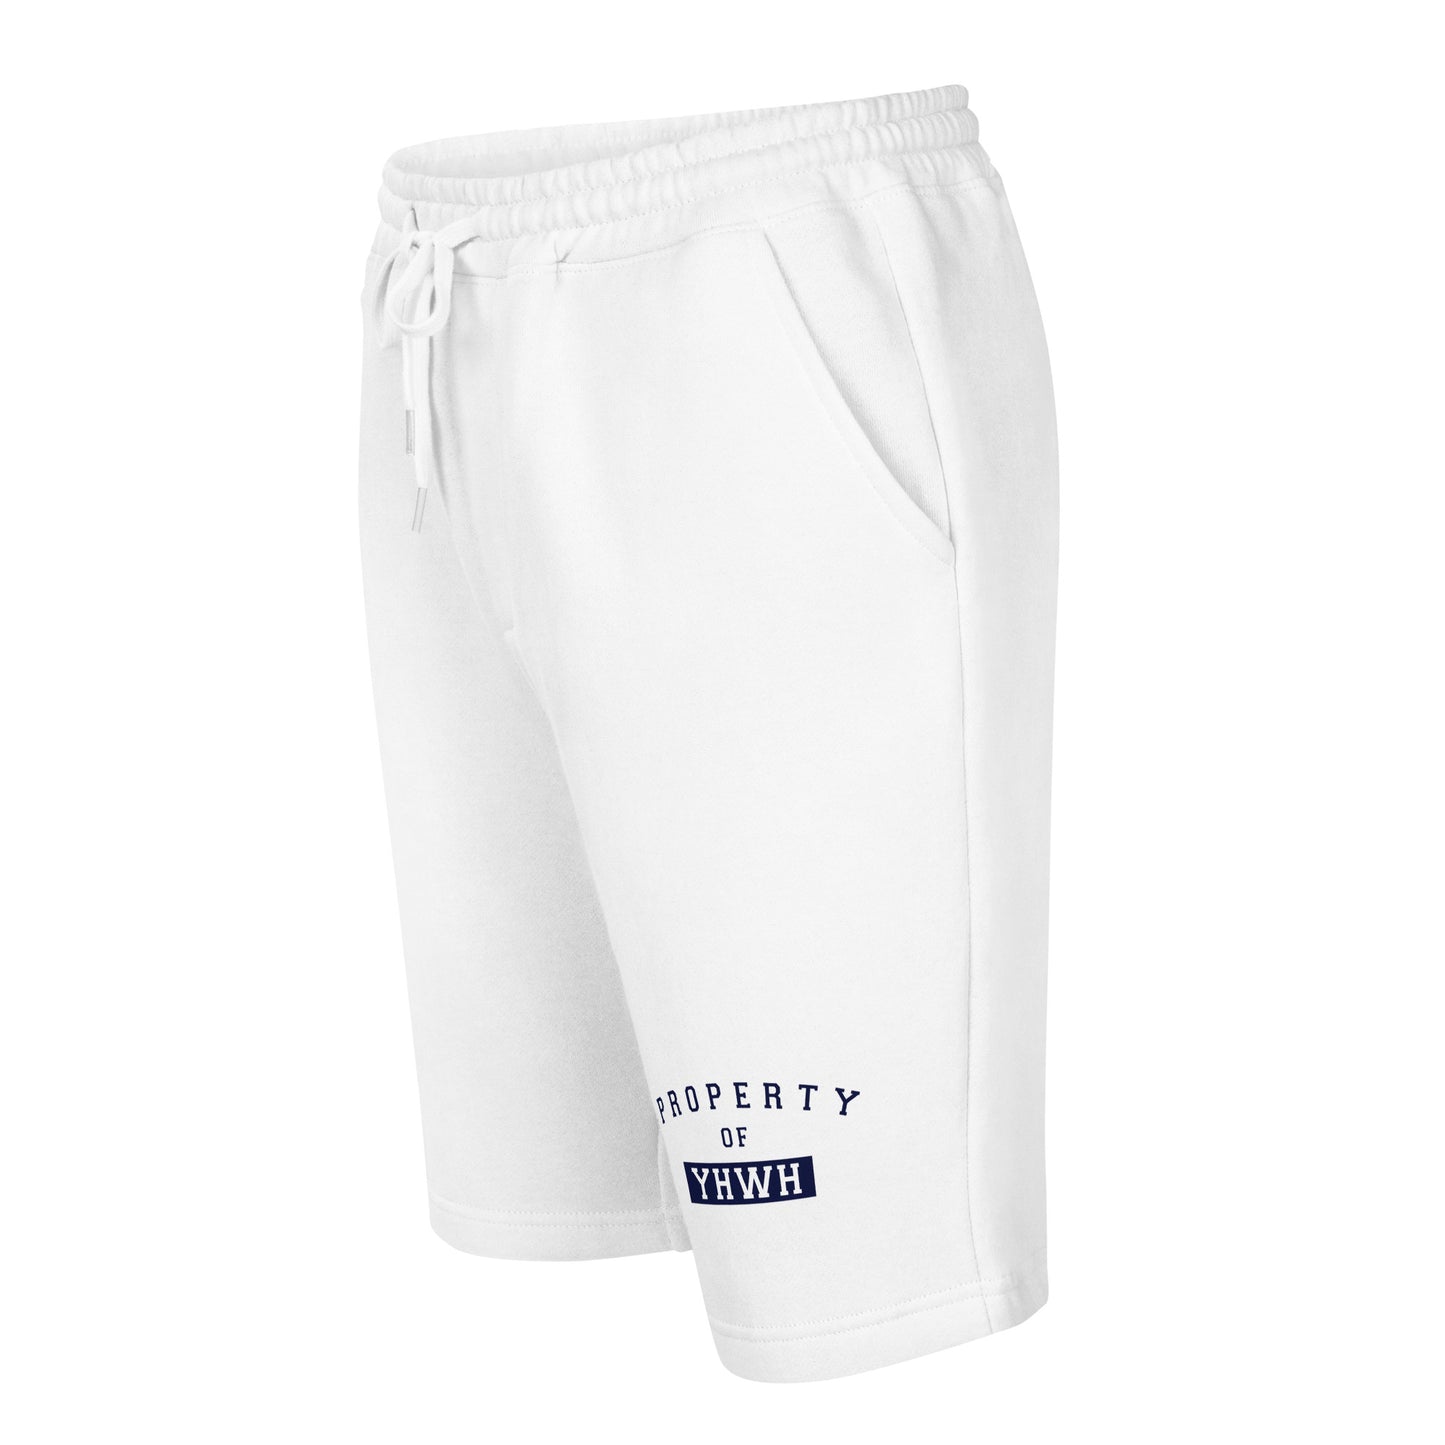 P.O.Y Shorts Men's fleece shorts